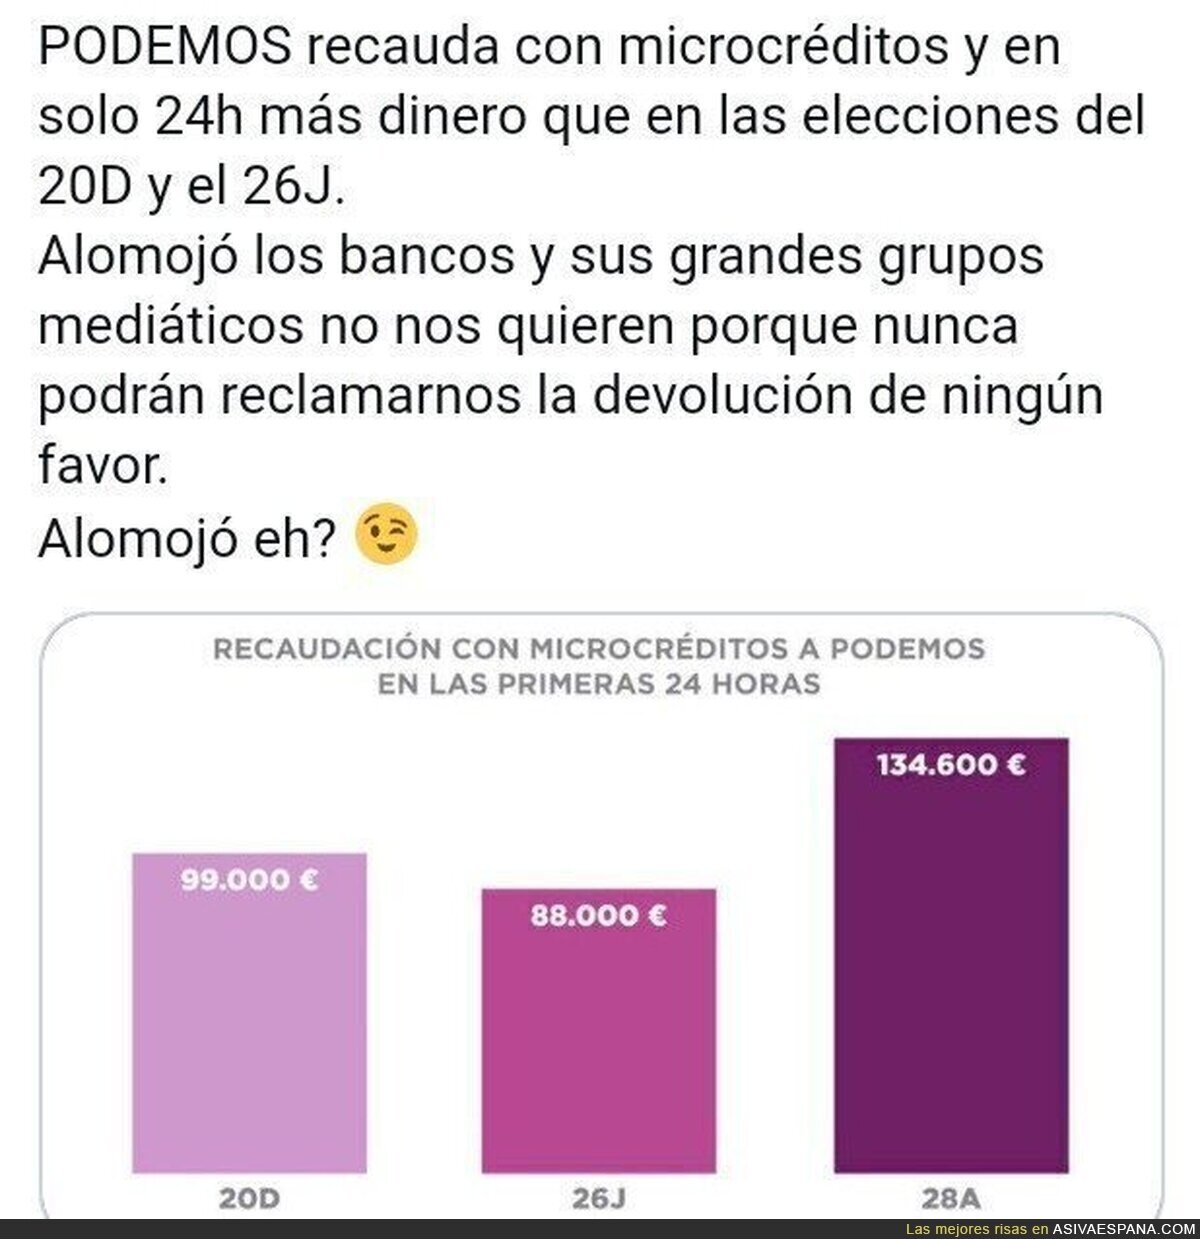 La financiación de Podemos para las elecciones ha empezado con récord